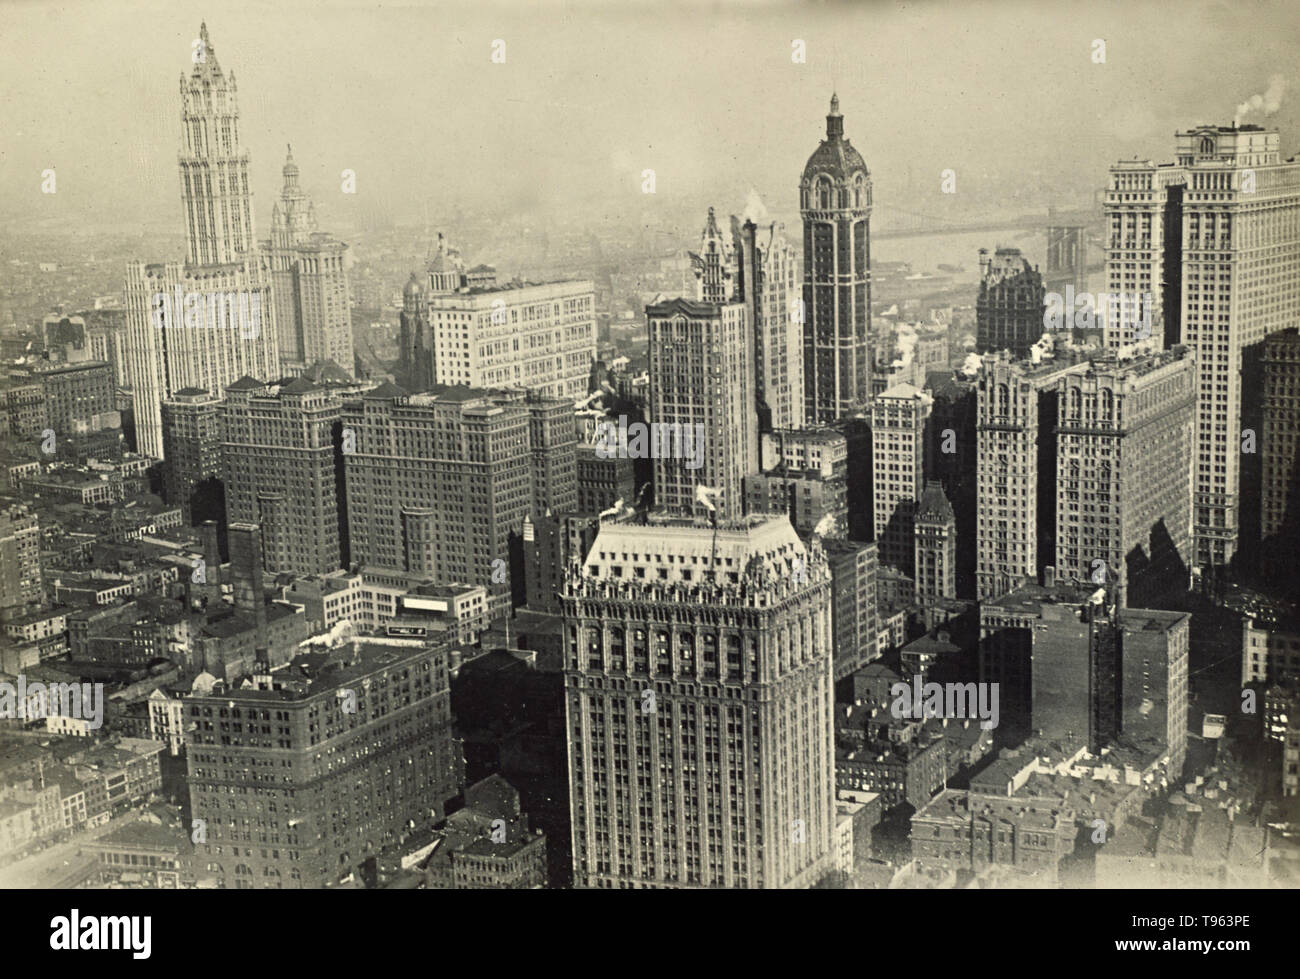 Vue aérienne de New York, le quartier financier, montrant le Woolworth Building à l'extrême gauche. Le Pont de Brooklyn peut être vu dans la distance. Fedele Azari (Italien, 1895 - 1930) ; Italie ; 1914 - 1929 ; argentique. Banque D'Images